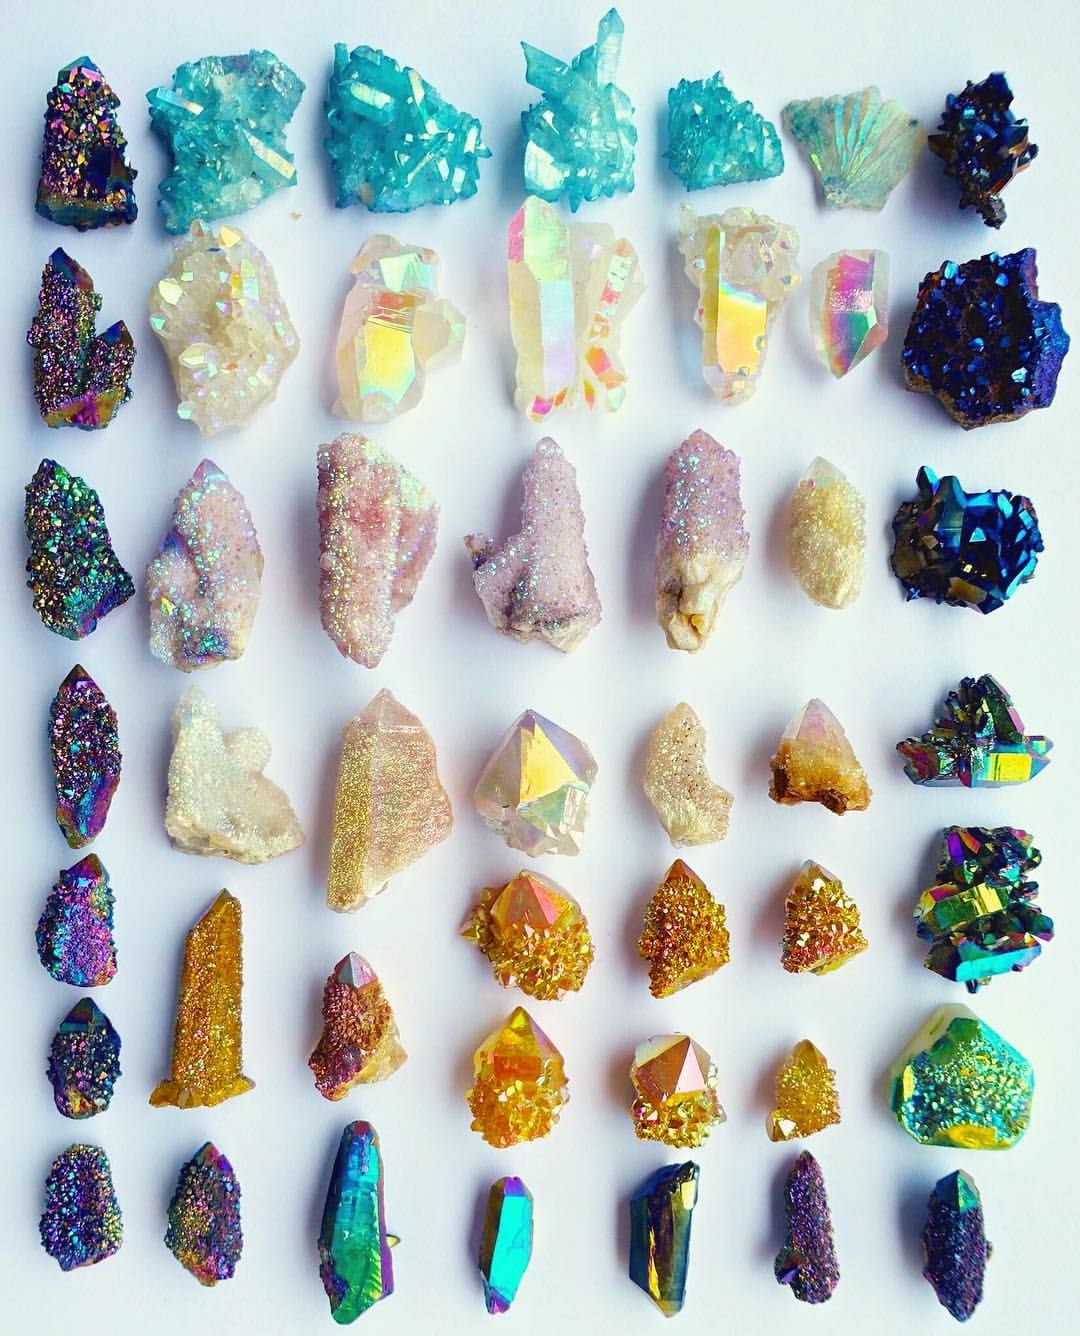 породы камней и их названия с фото